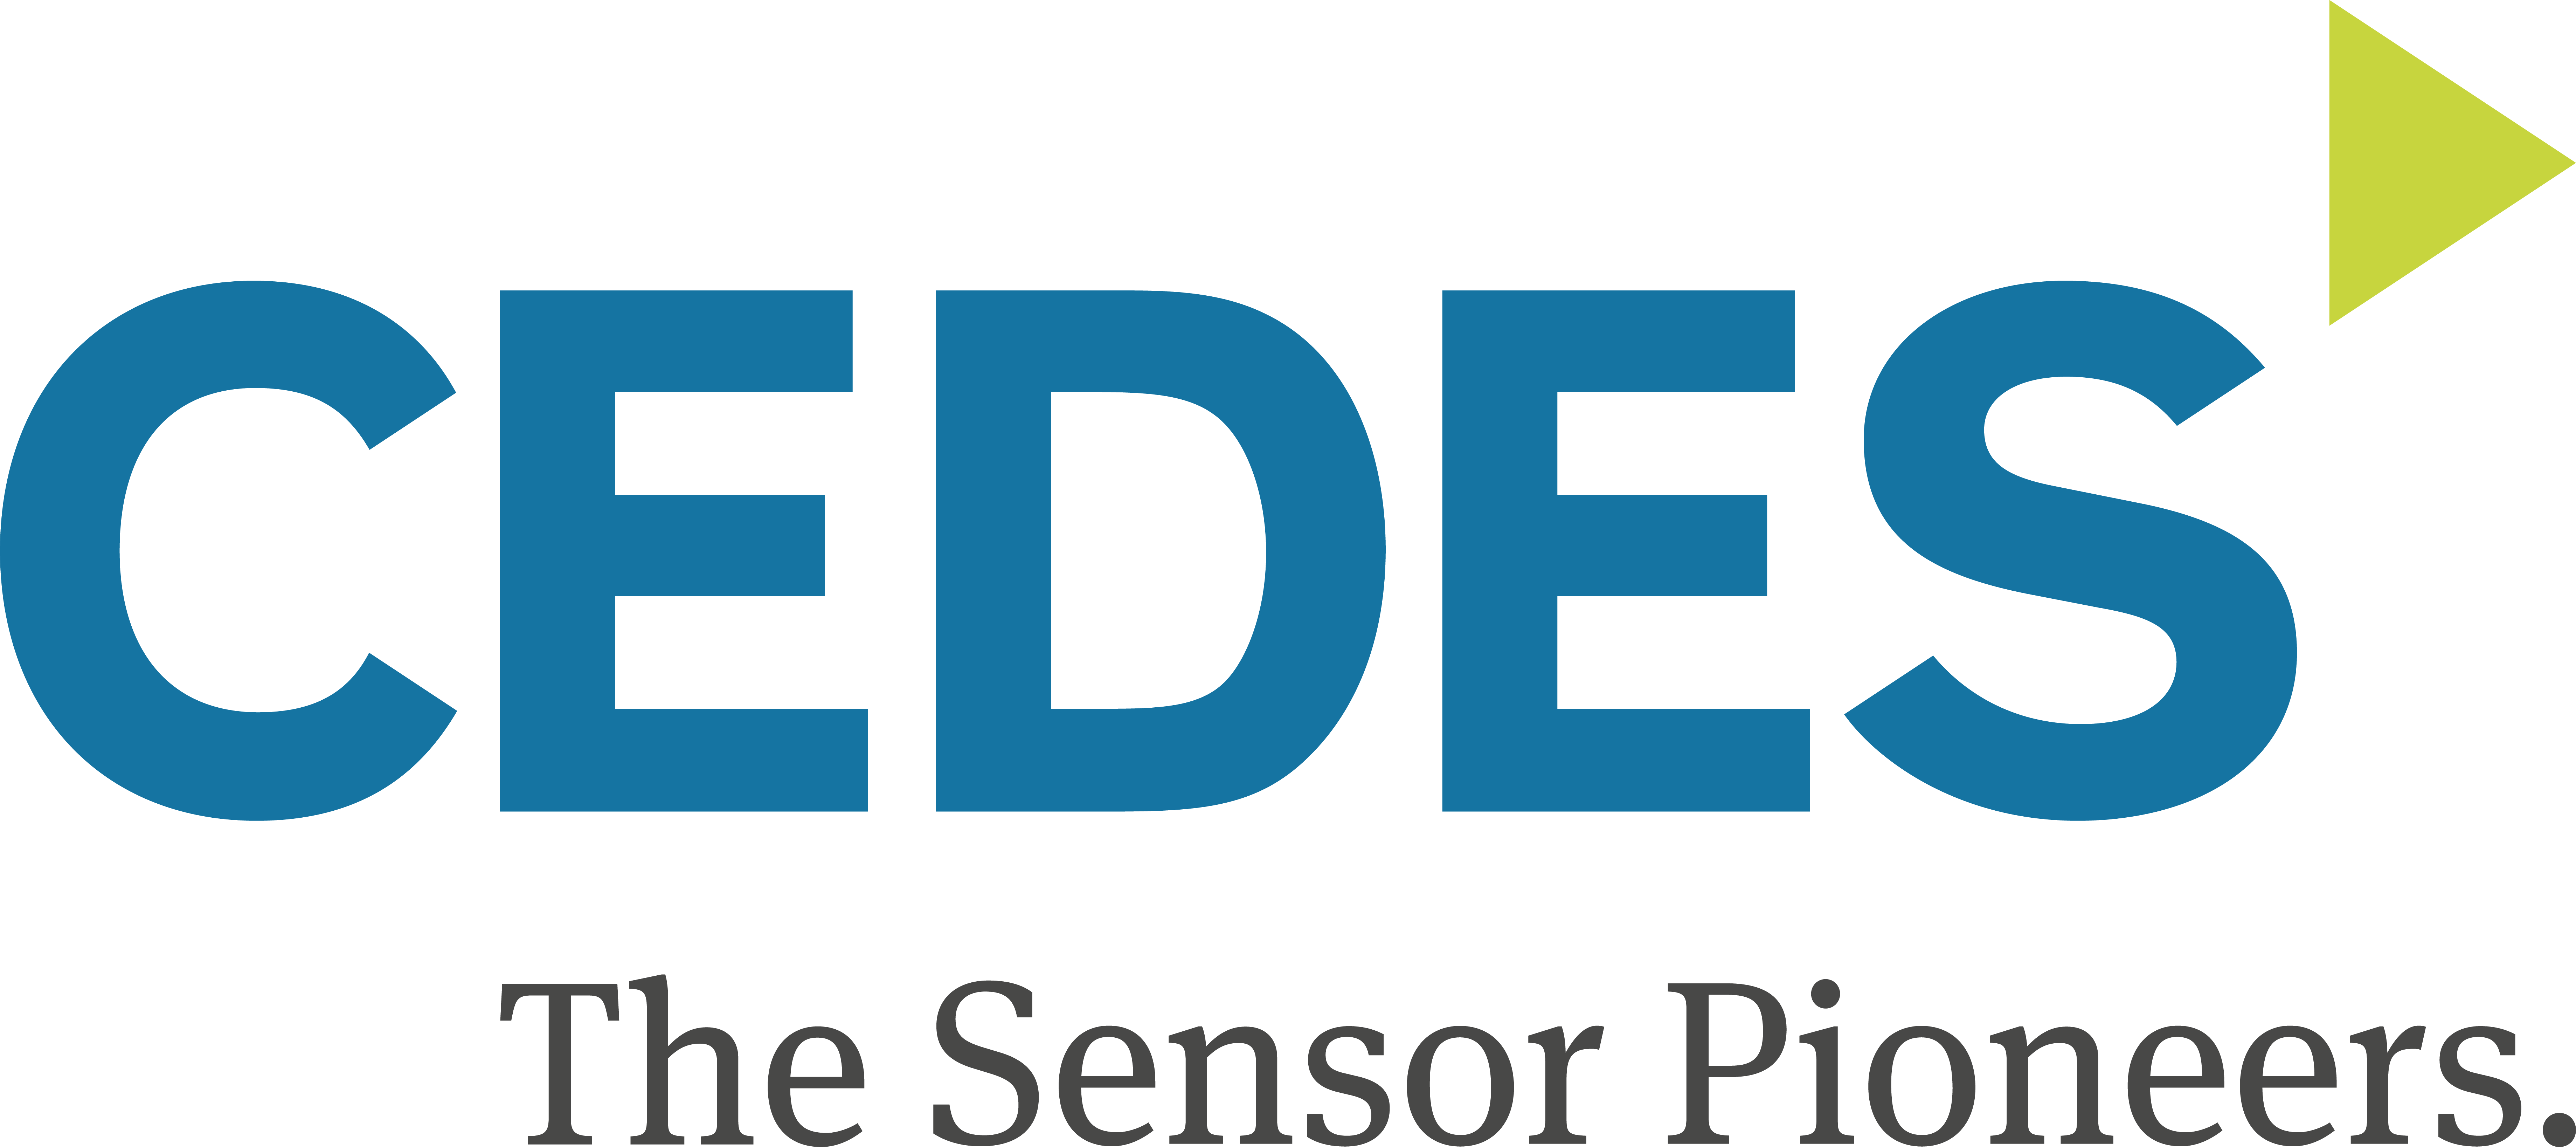 CEDES-Logo